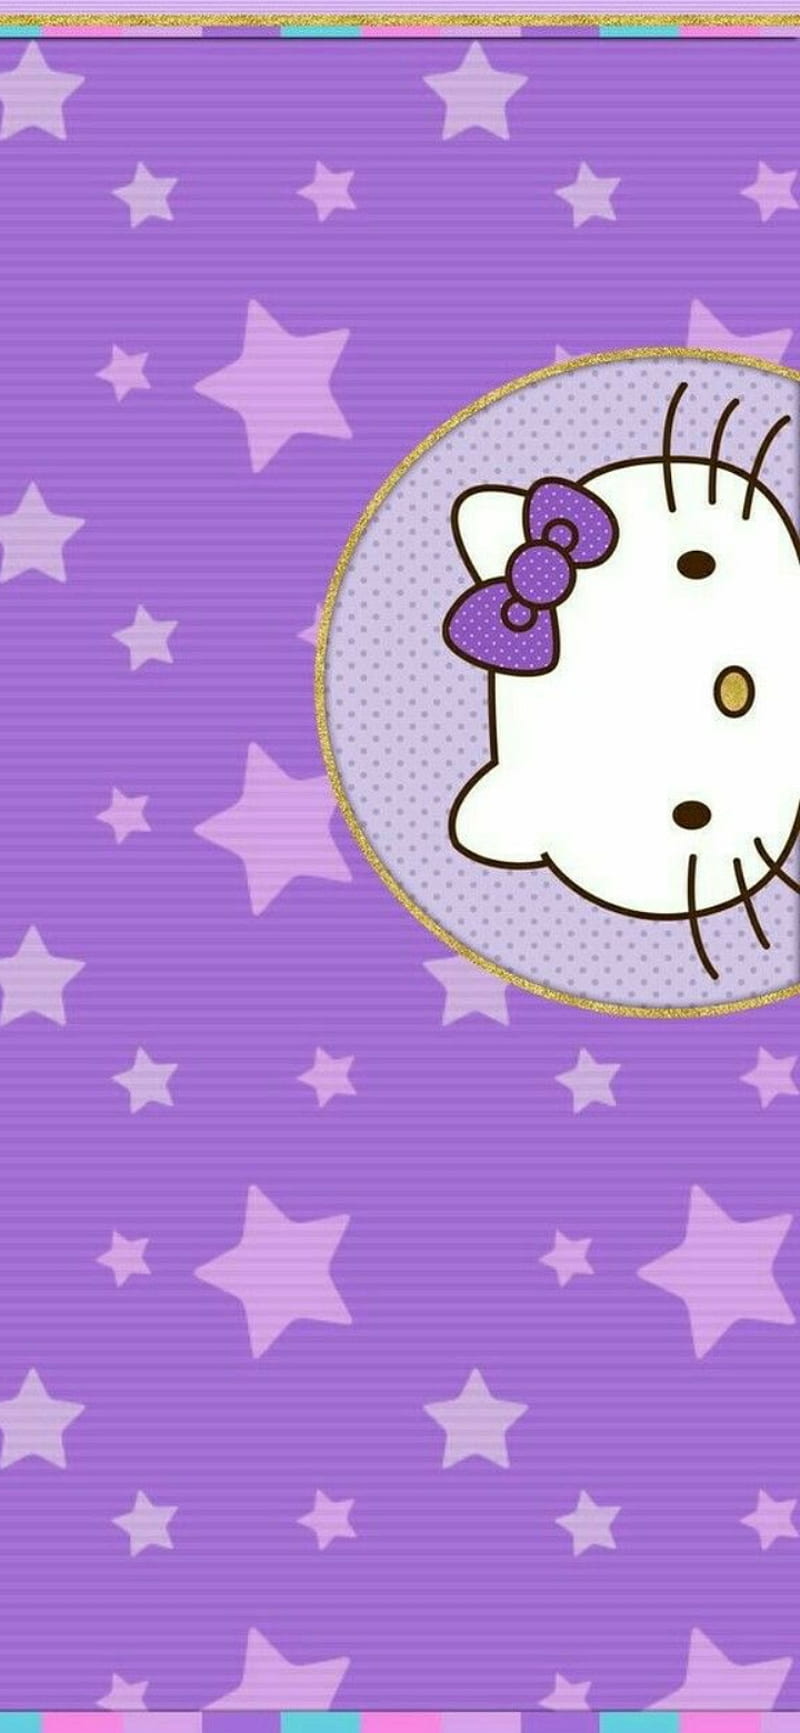 hello kitty wallpaper purple